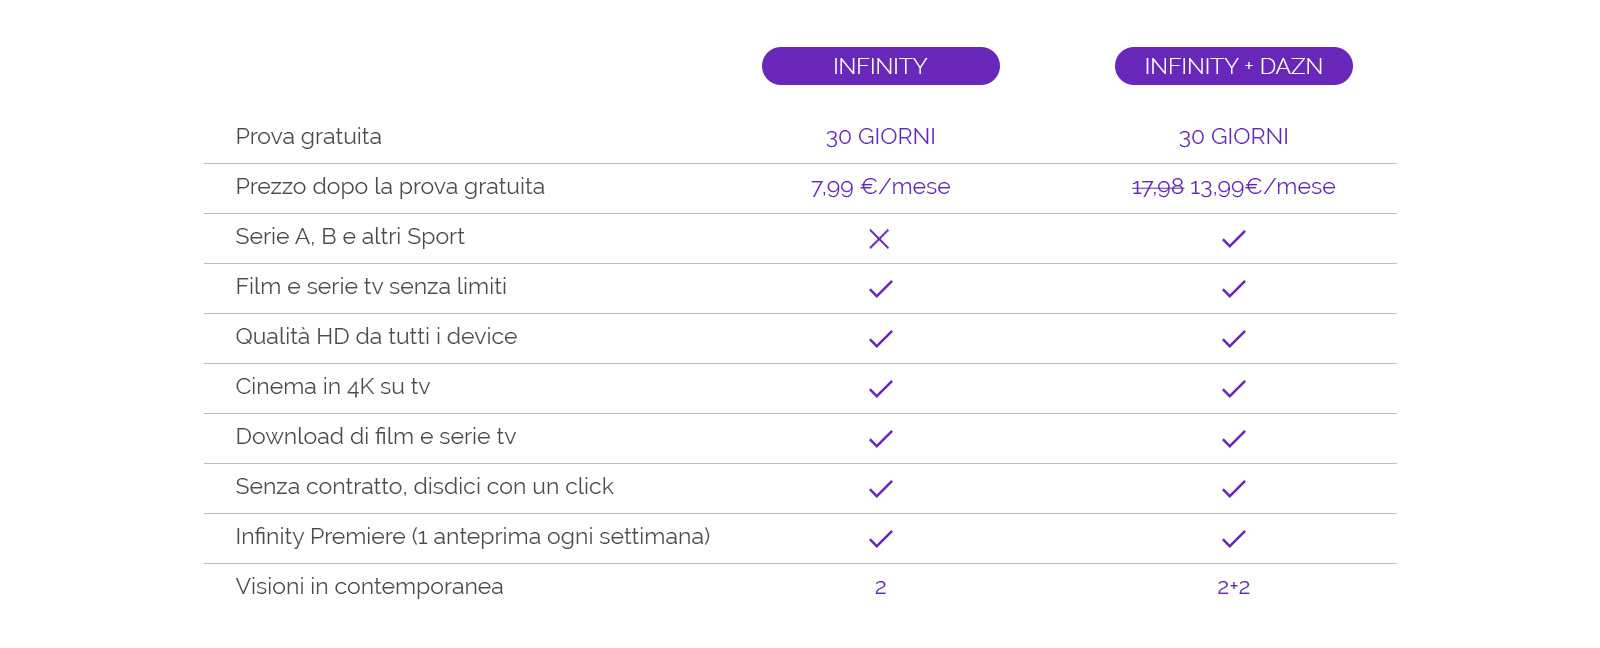 Infinity lancia il pacchetto congiunto con DAZN al costo di €13,99 al mese